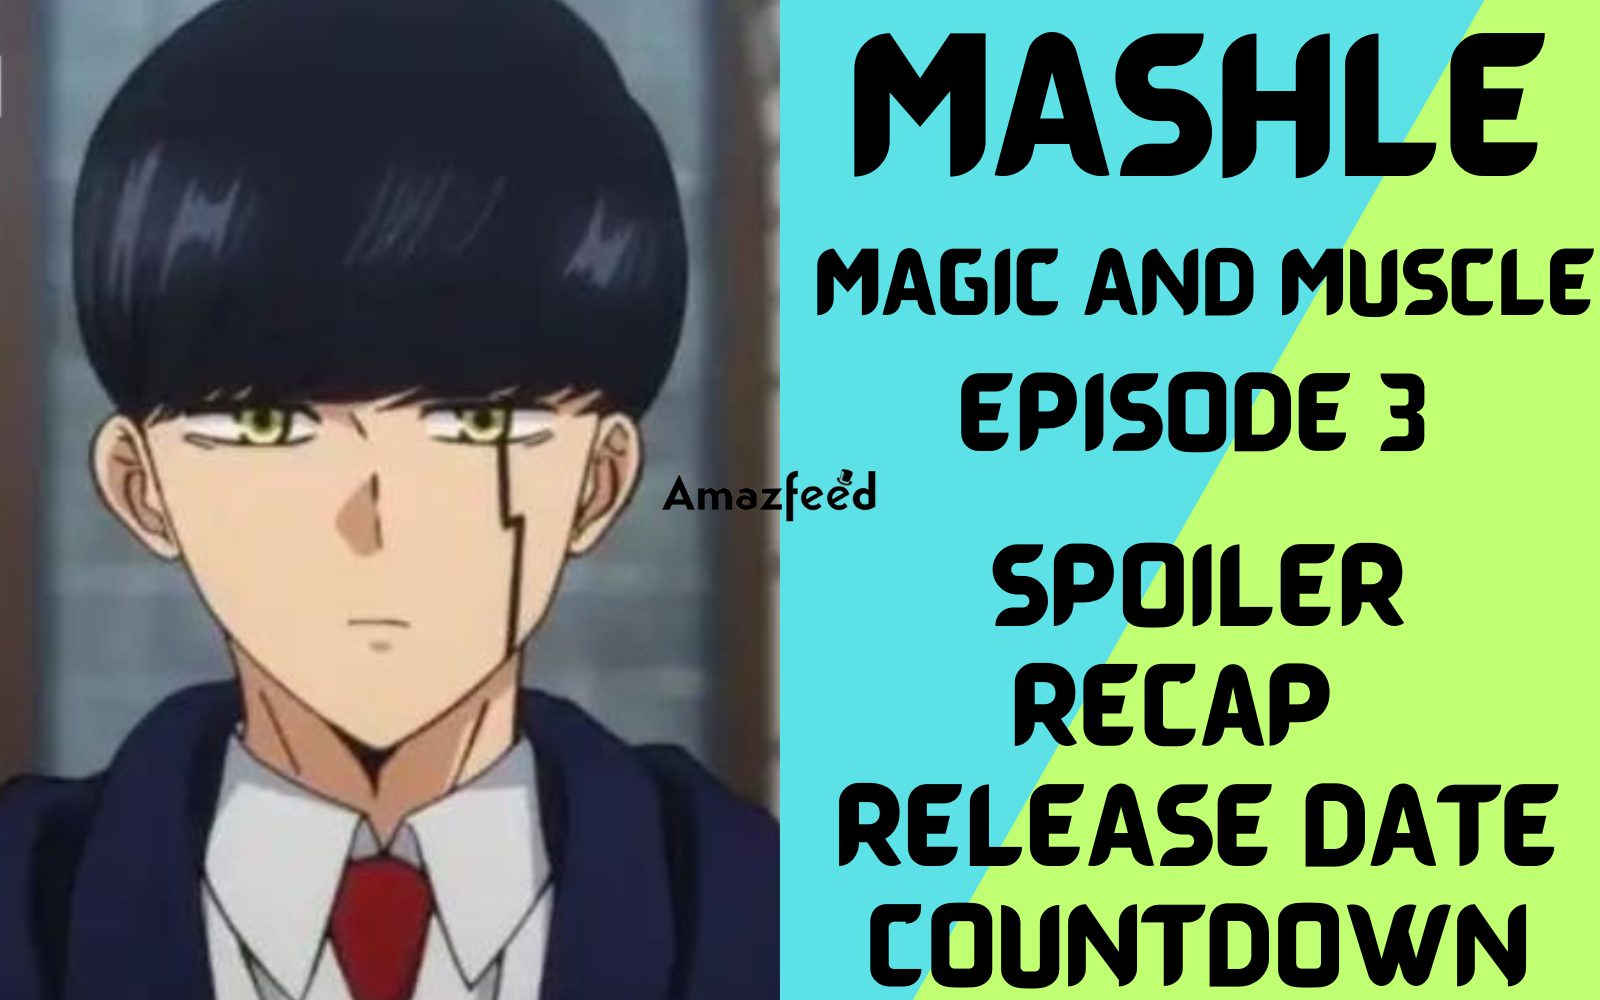 Mashle episode 5 #mashlemagicandmuscles #mashle #mashleanime #anime #a